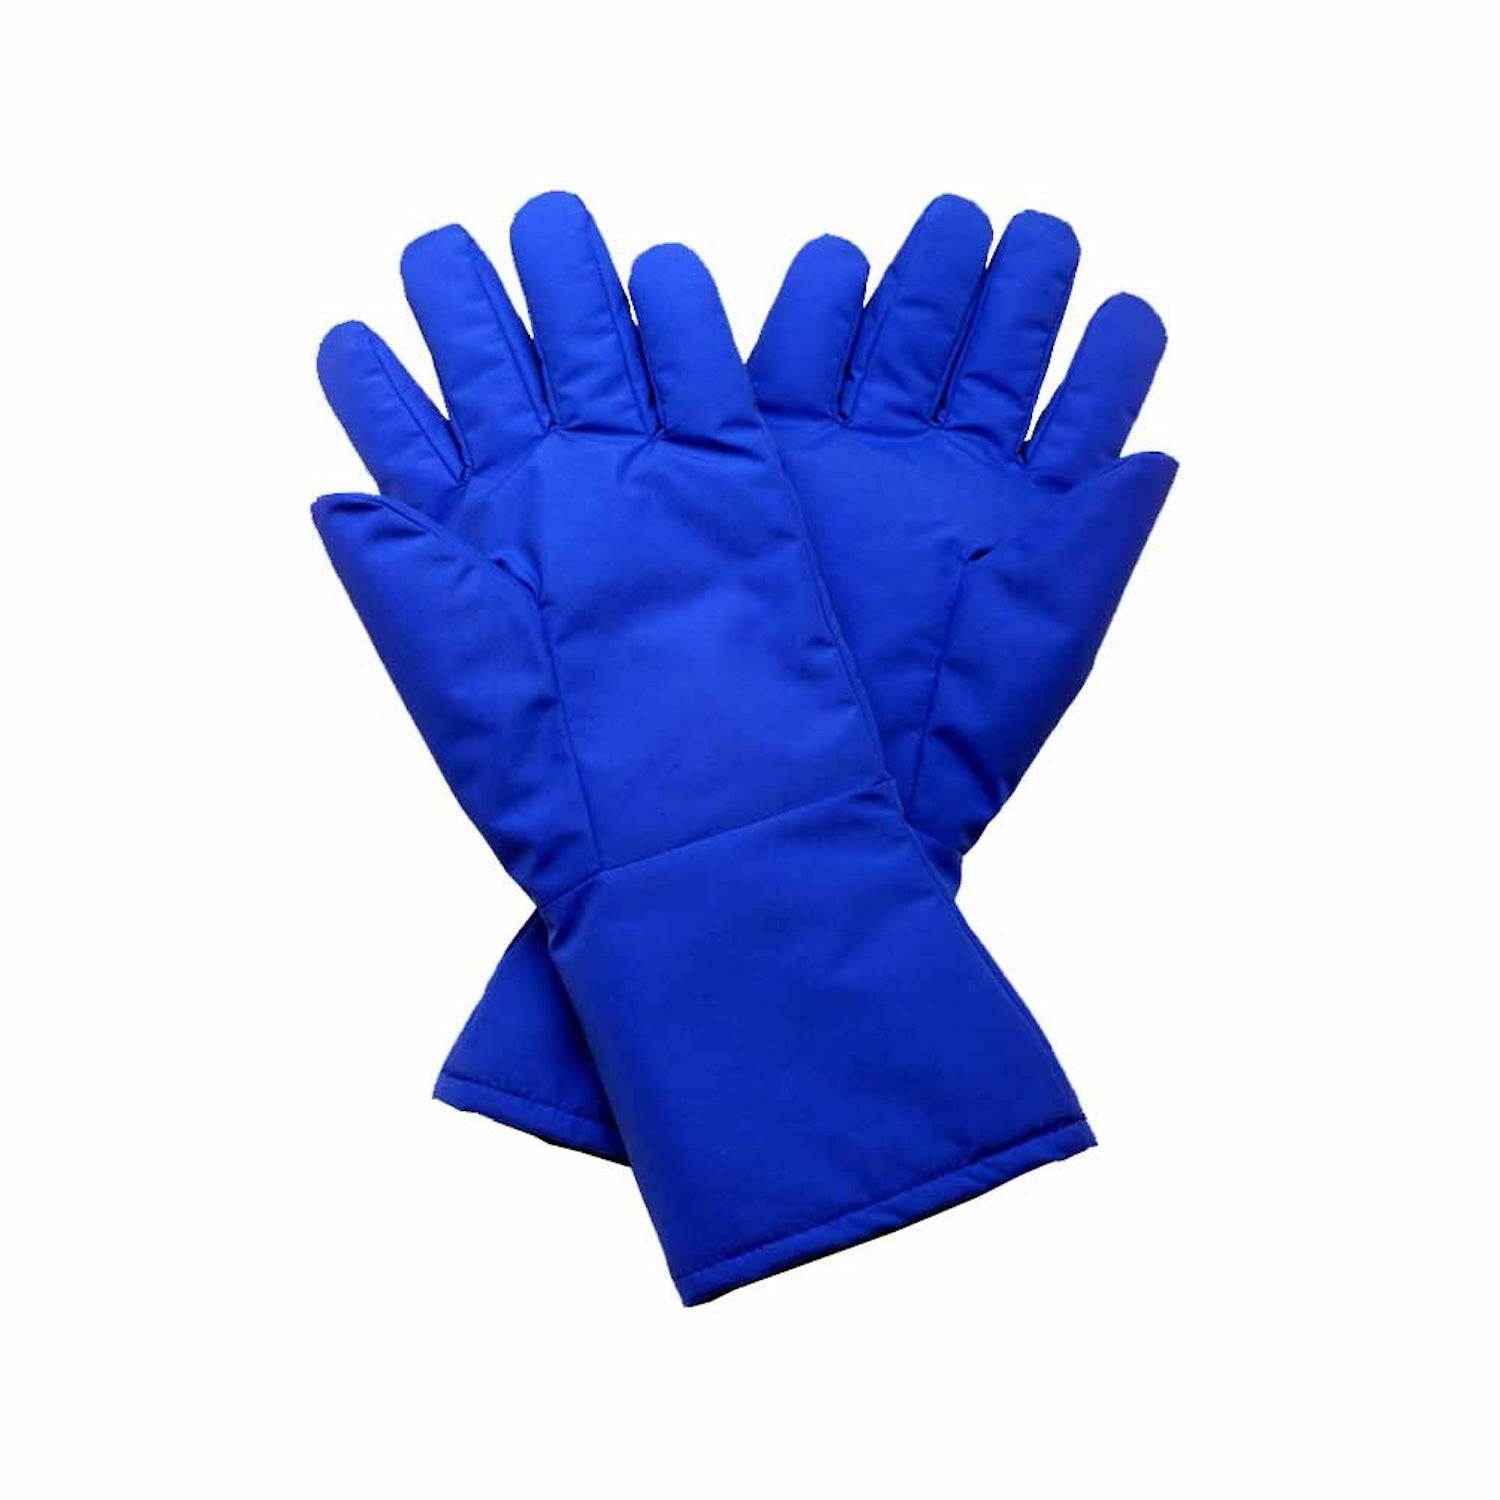 Cryo Safety Gloves | Medium